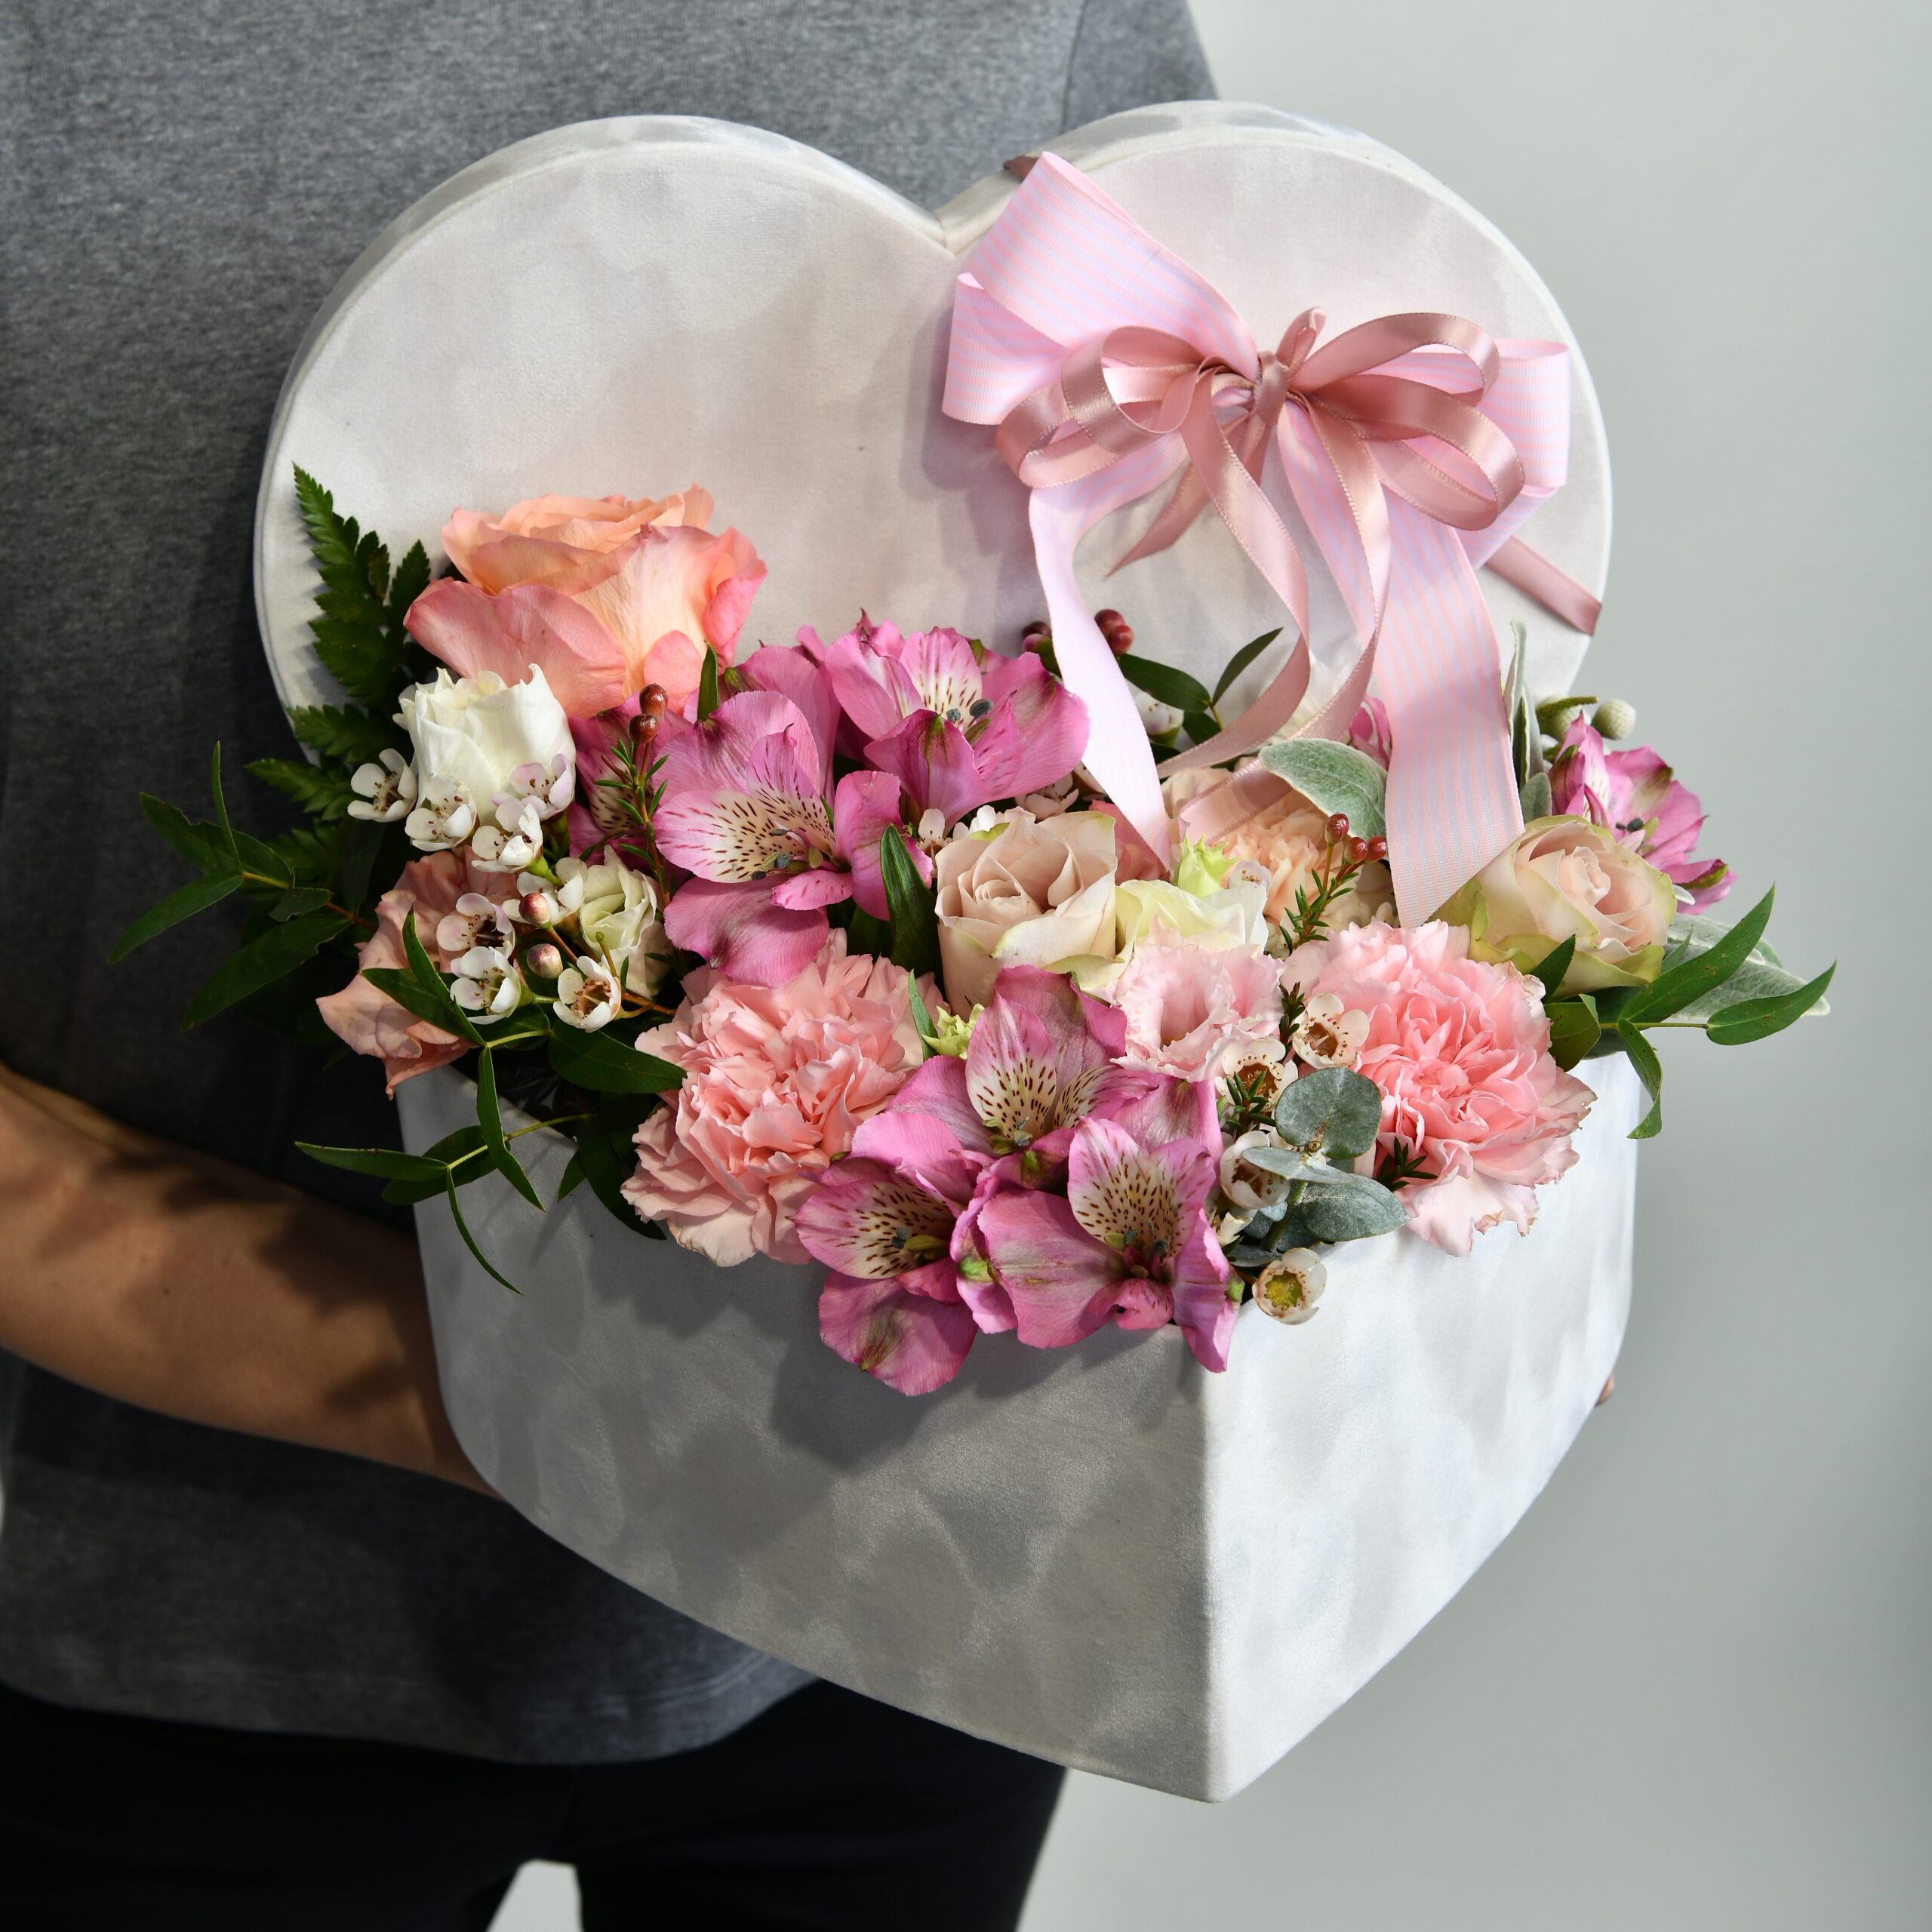 flowers in a box - delivery of flowers Belgrade - online flower shop Belgrade